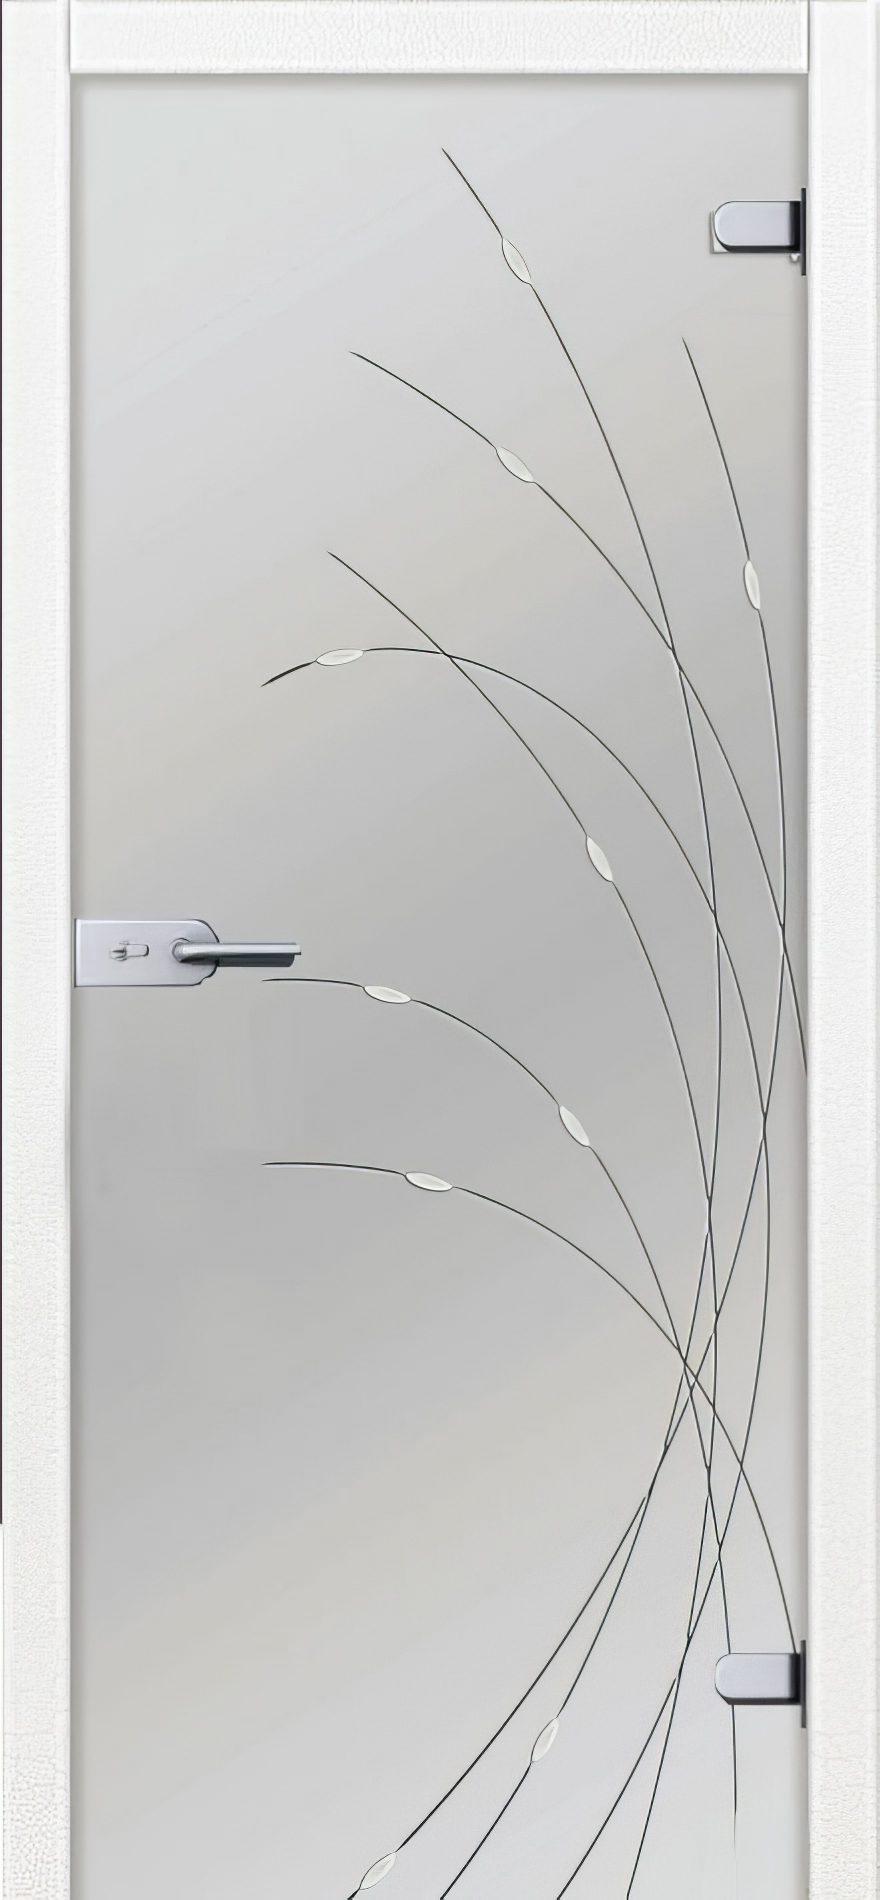 стеклянные двери  Дариано Вербена-1 белая гравировка+фьюзинг